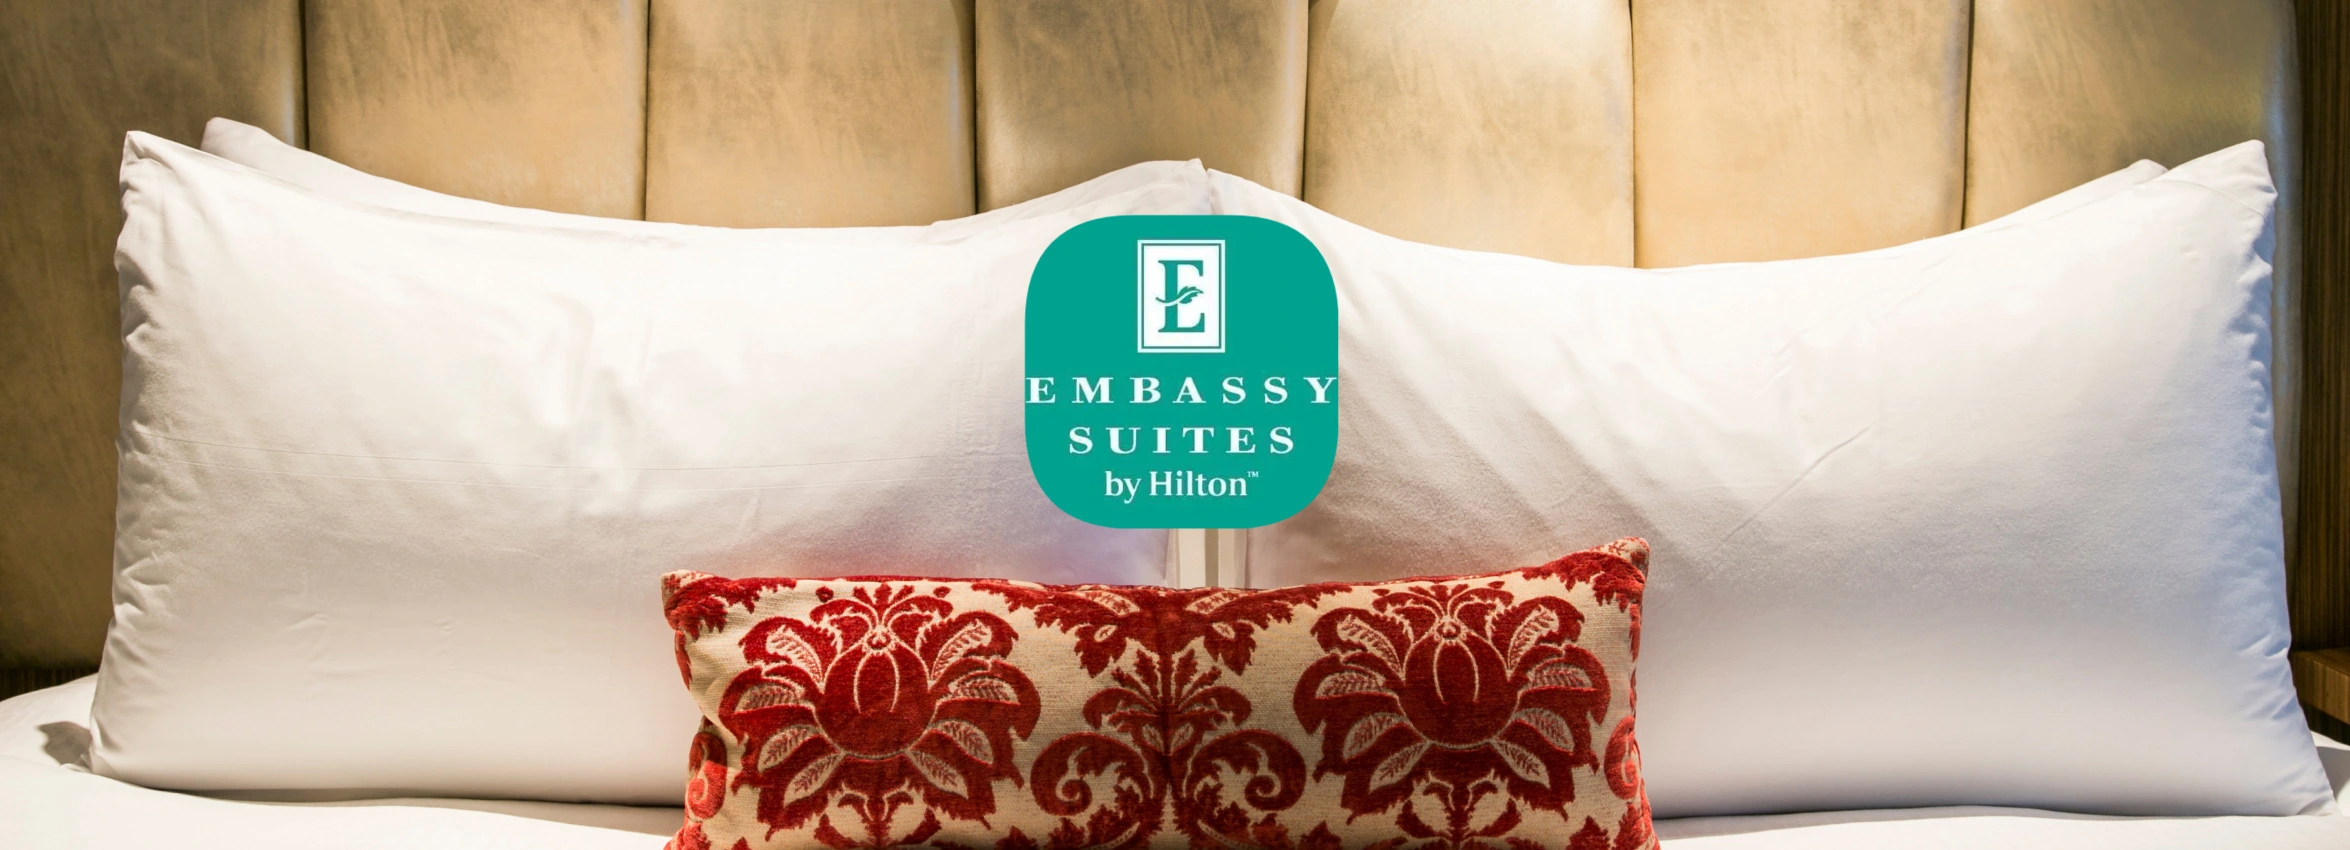 Embassy-Suites